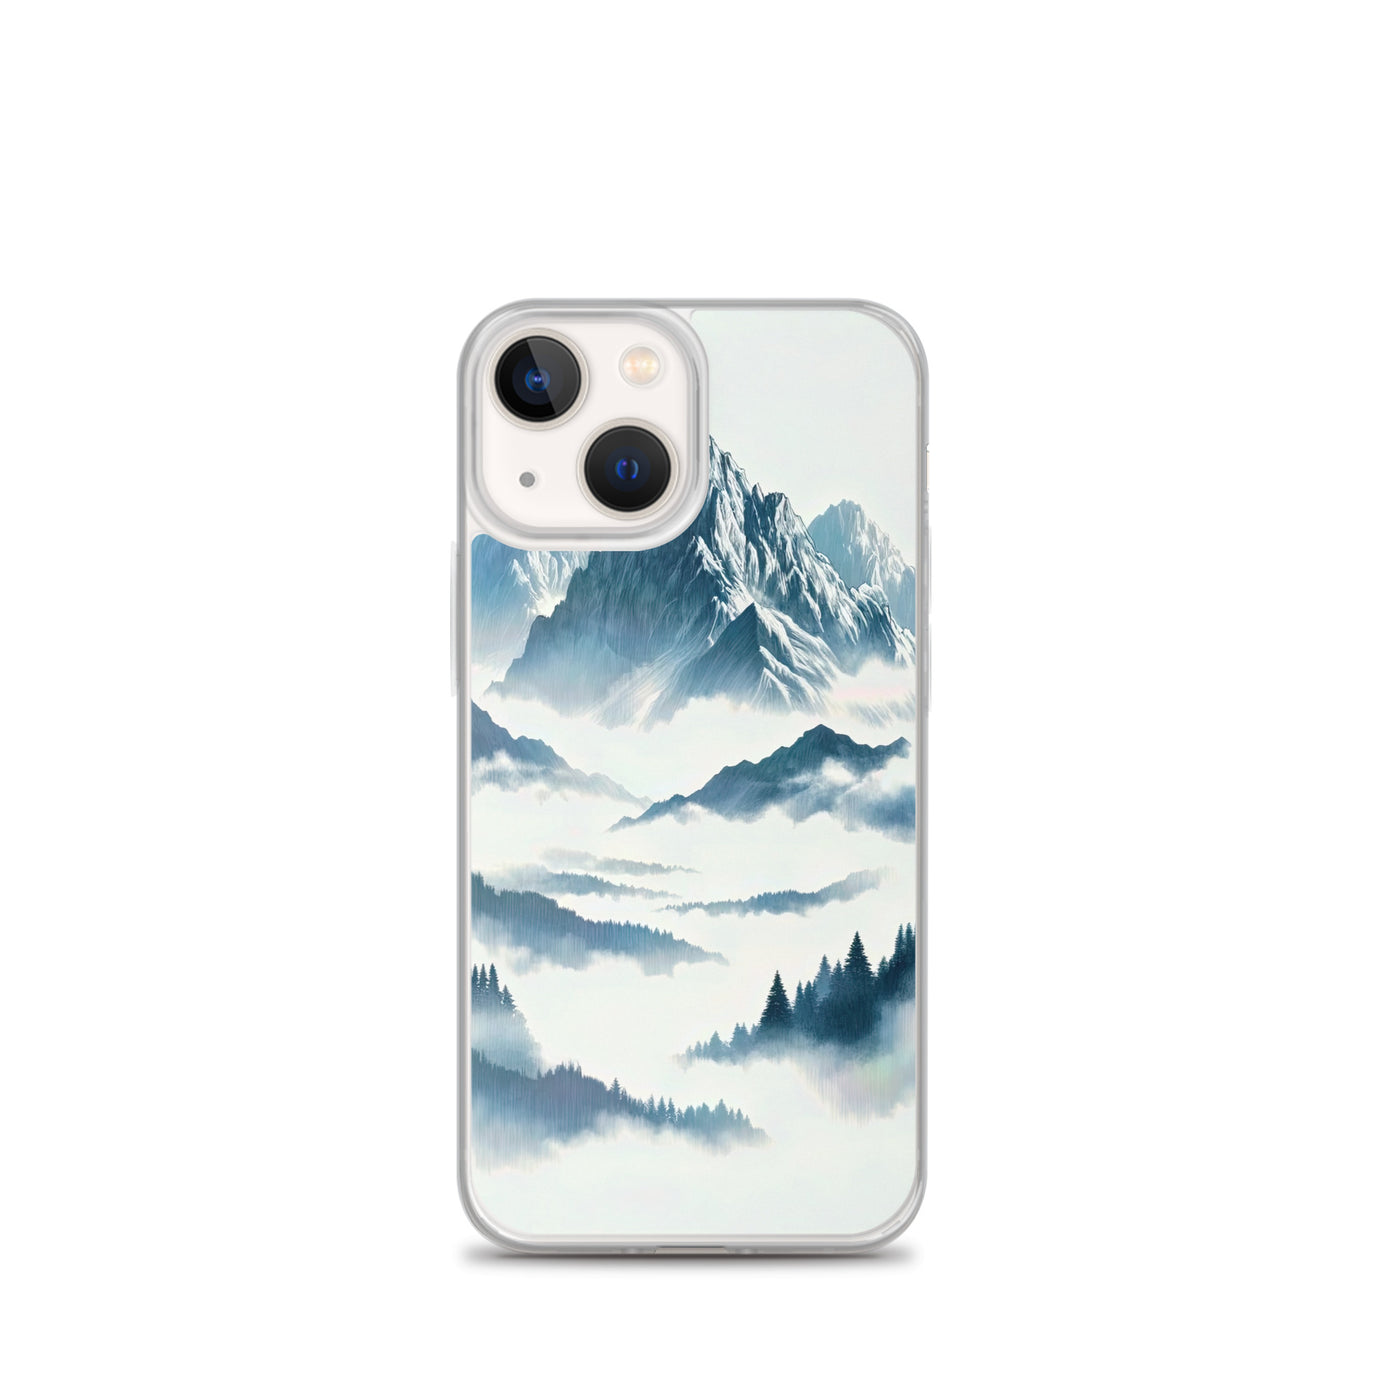 Nebeliger Alpenmorgen-Essenz, verdeckte Täler und Wälder - iPhone Schutzhülle (durchsichtig) berge xxx yyy zzz iPhone 13 mini